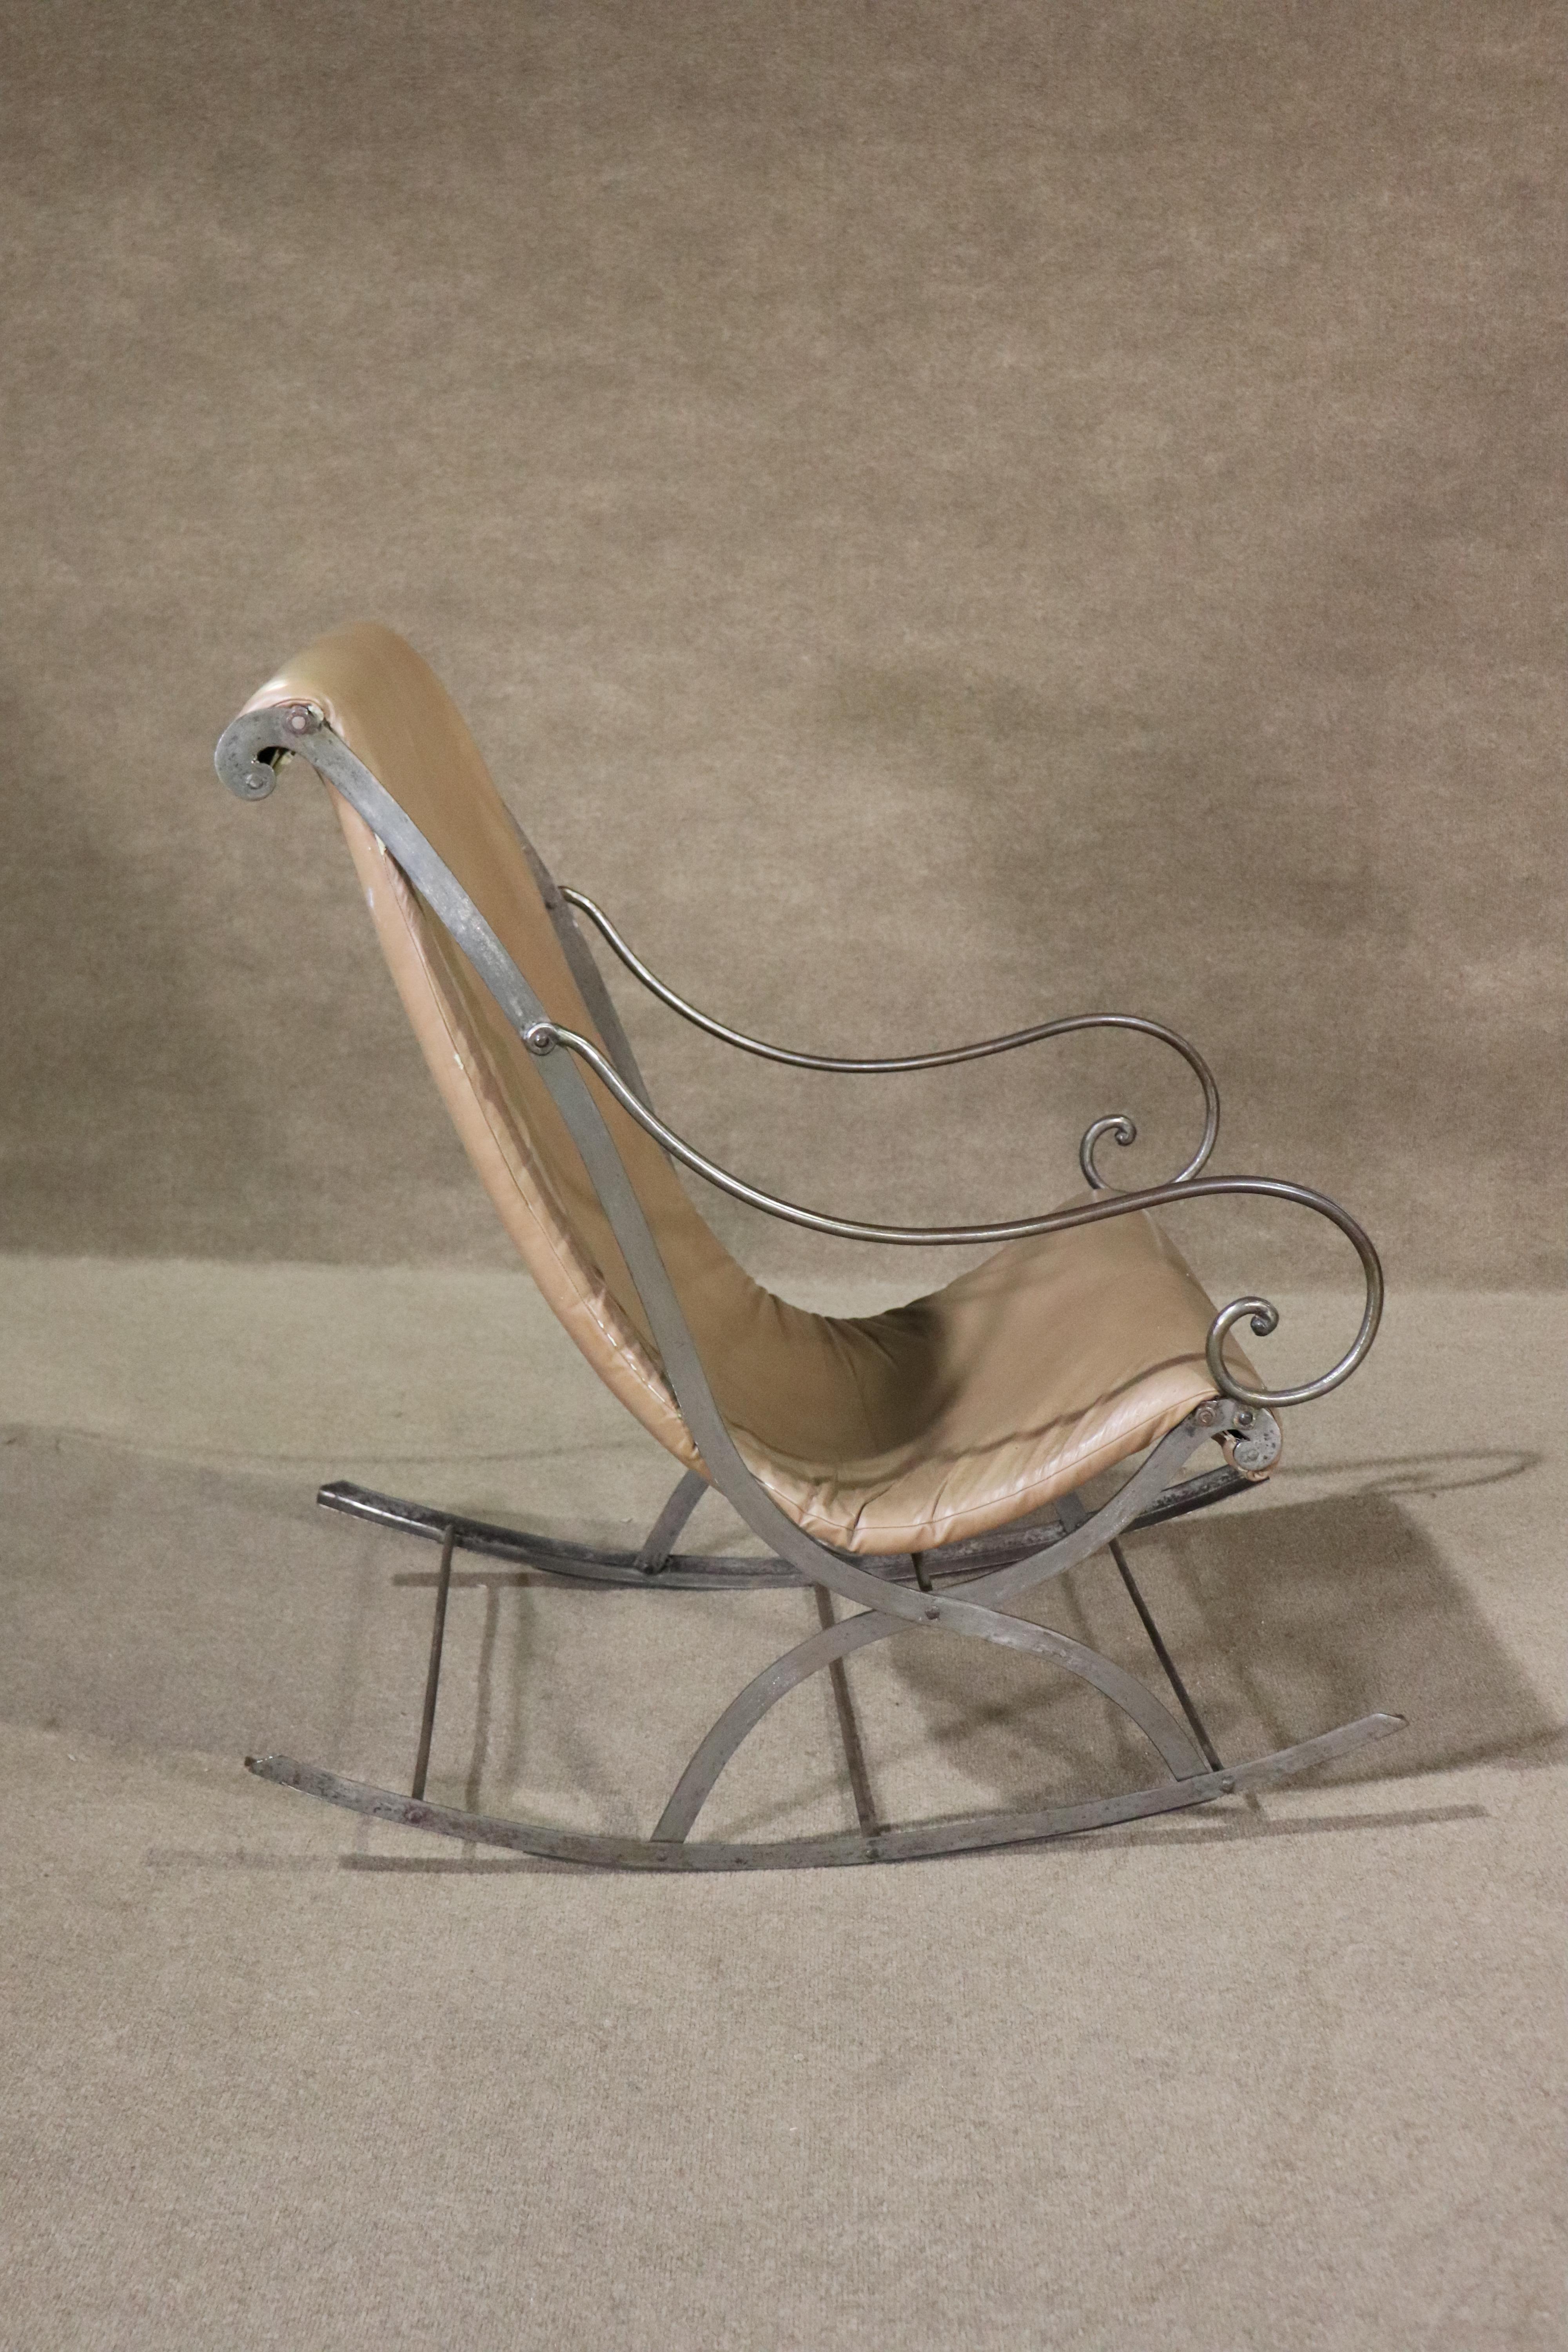 Dieser Schaukelstuhl aus der Mitte des Jahrhunderts besteht aus einem stabilen Metallrahmen und einem geschwungenen Vinylsitz. 
Bitte bestätigen Sie den Standort NY oder NJ